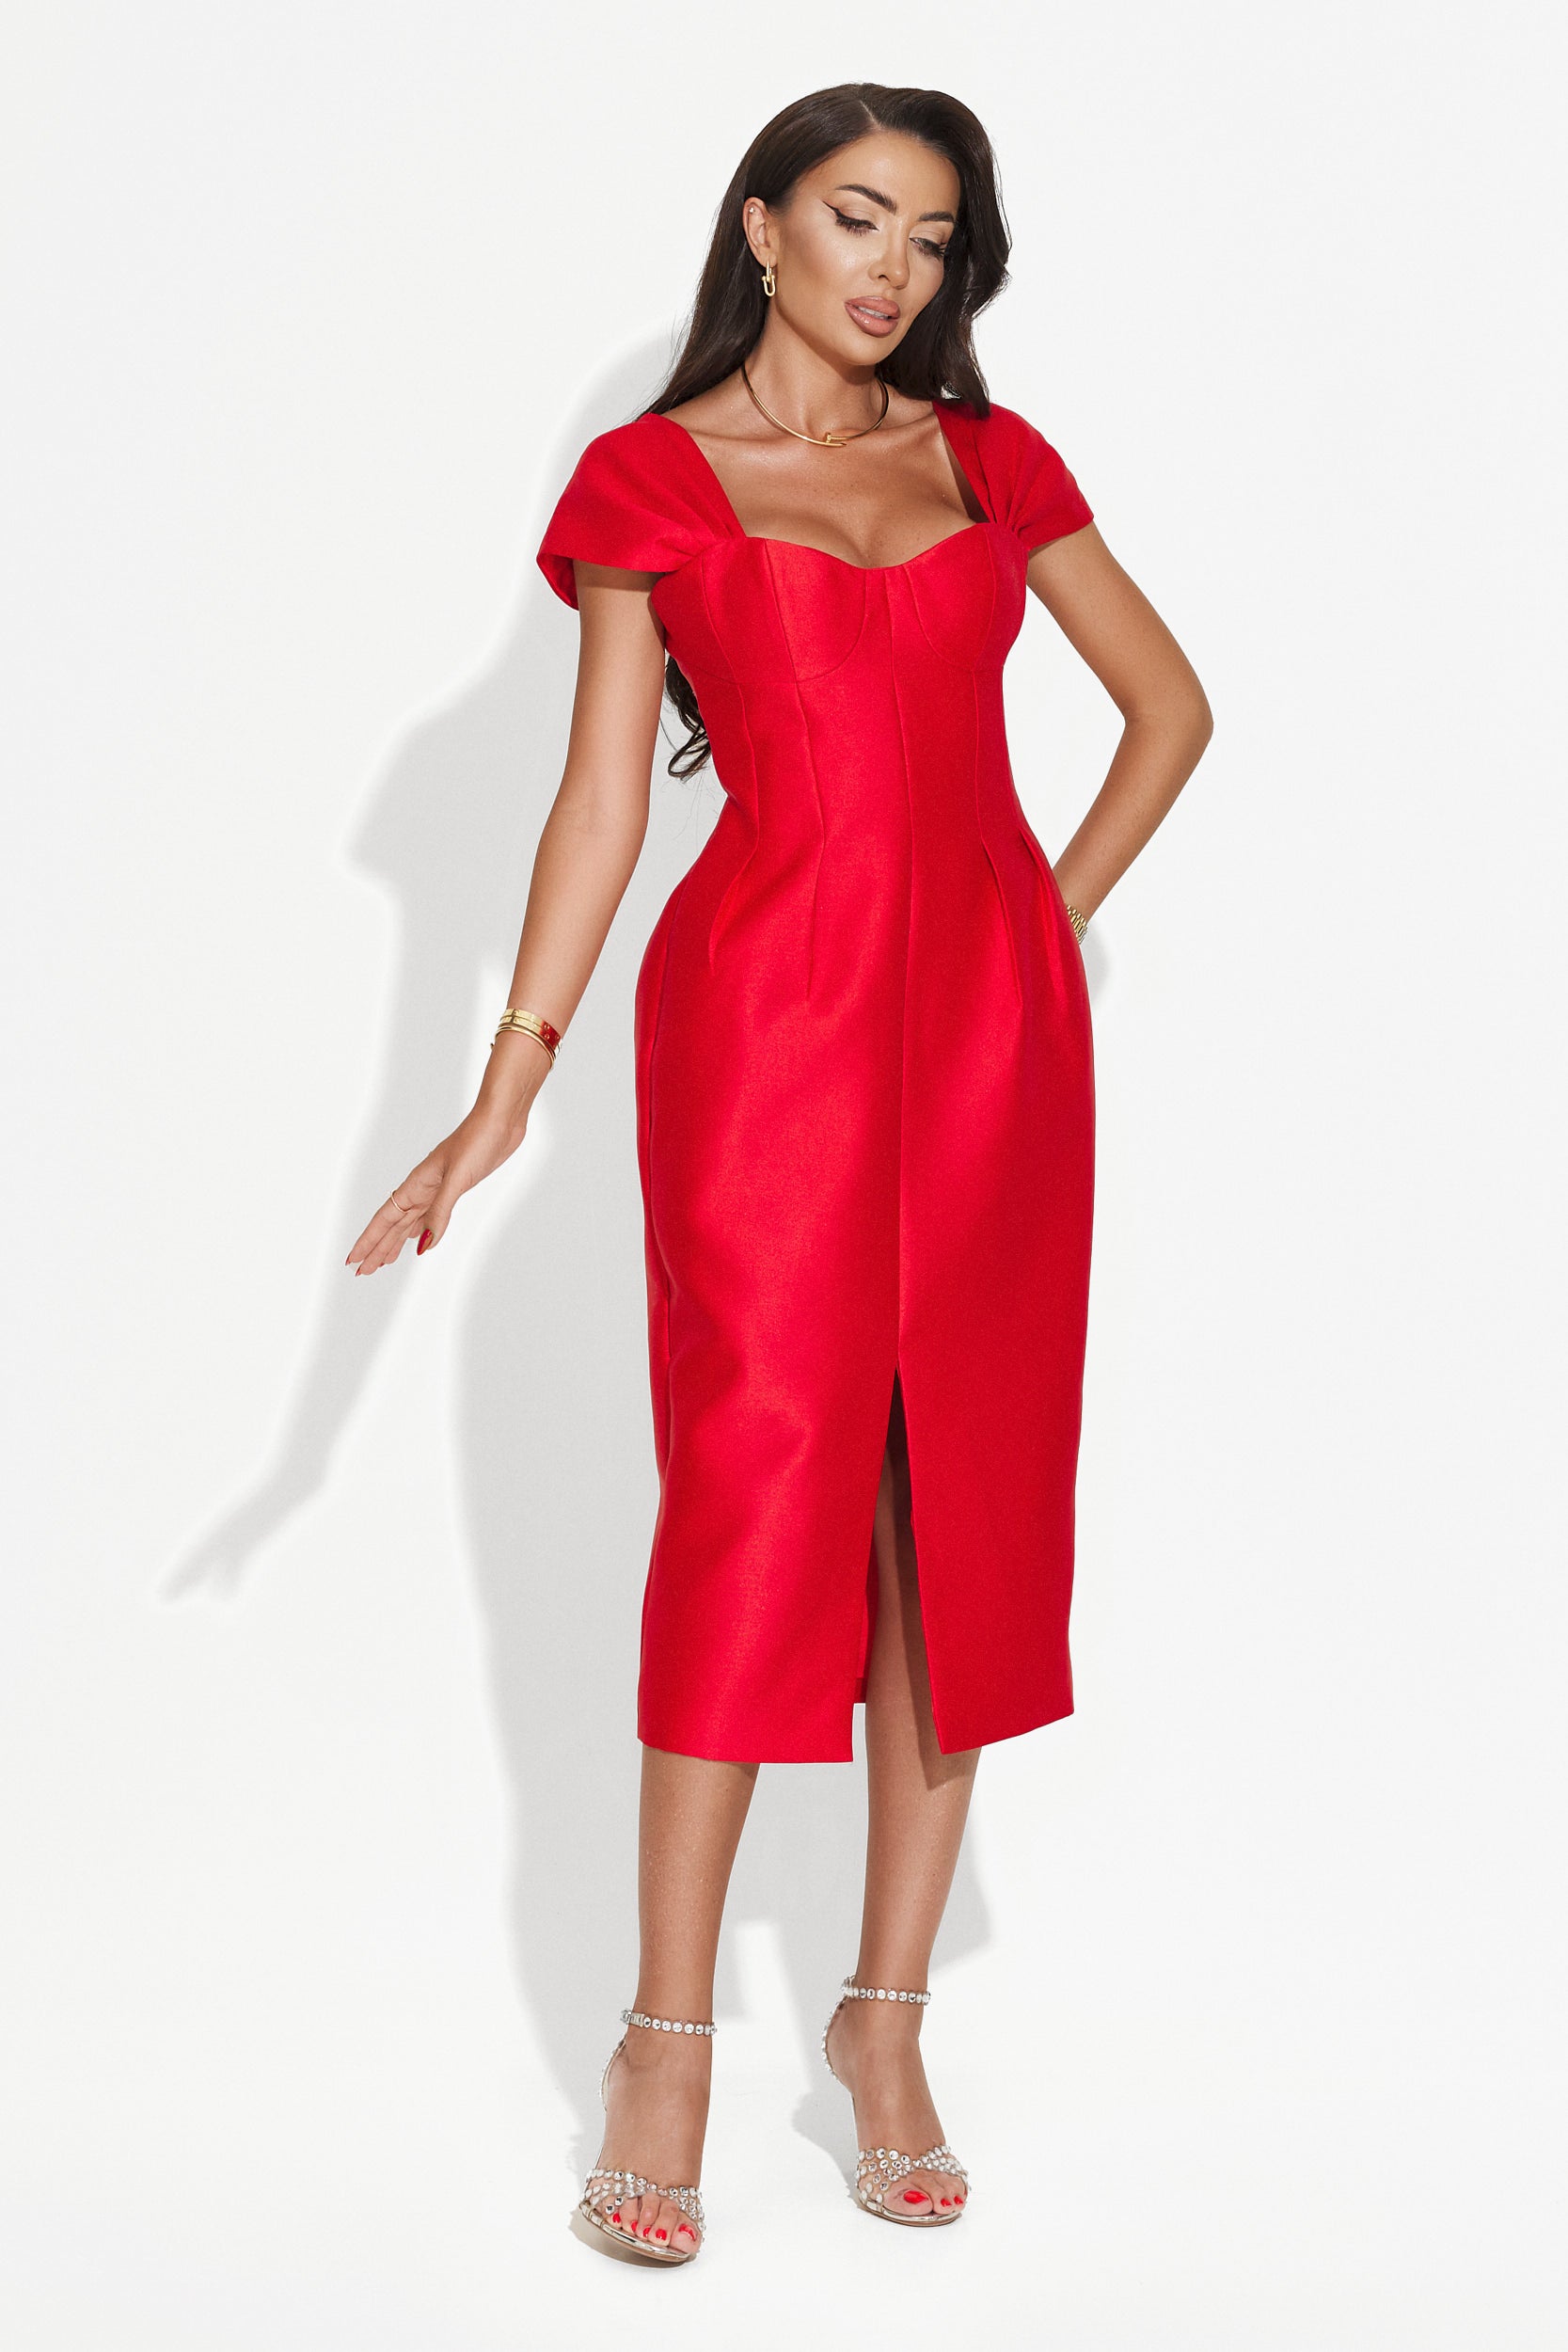 Letona Bogas hosszú piros női ruha